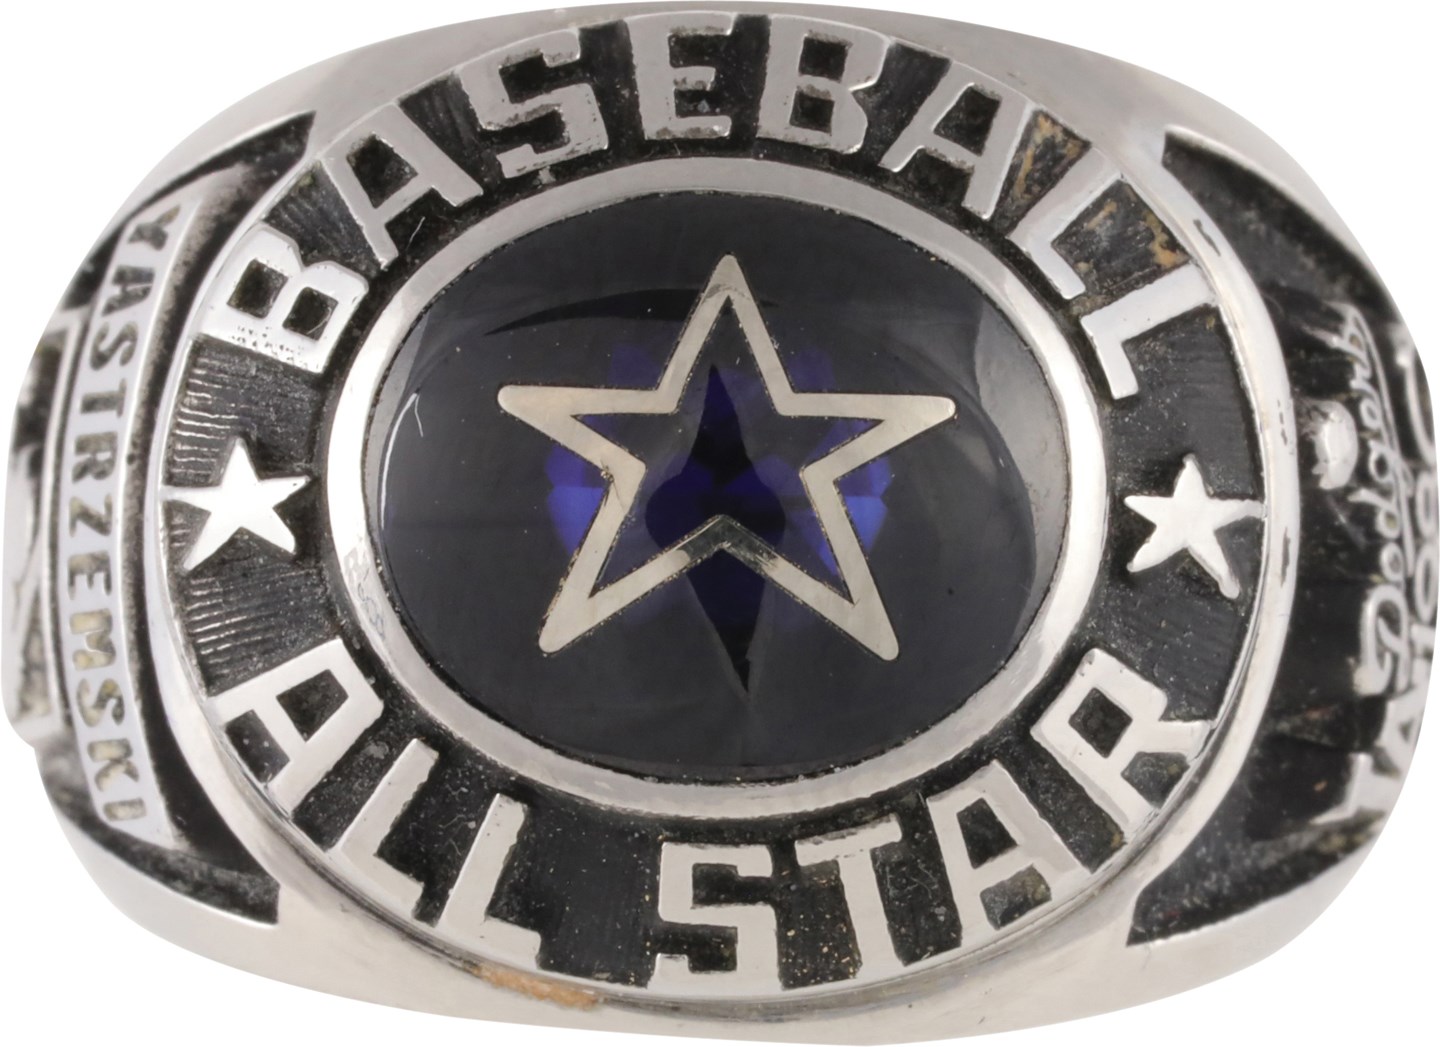 - 1980 MLB All-Star Game Ring - "Yastrzemski"